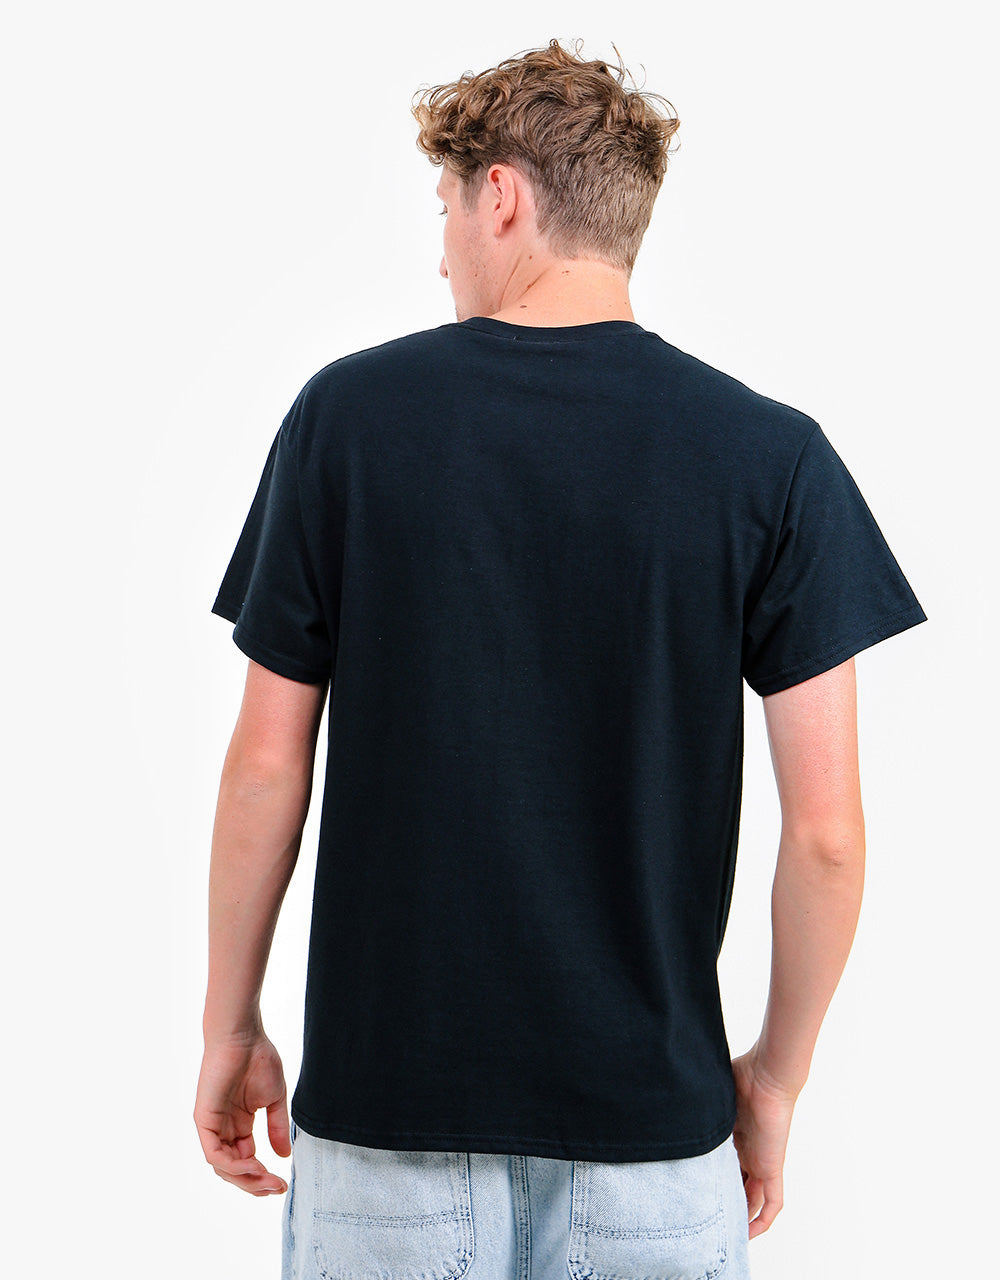 Thrasher Outlined T-Shirt - Black/Black